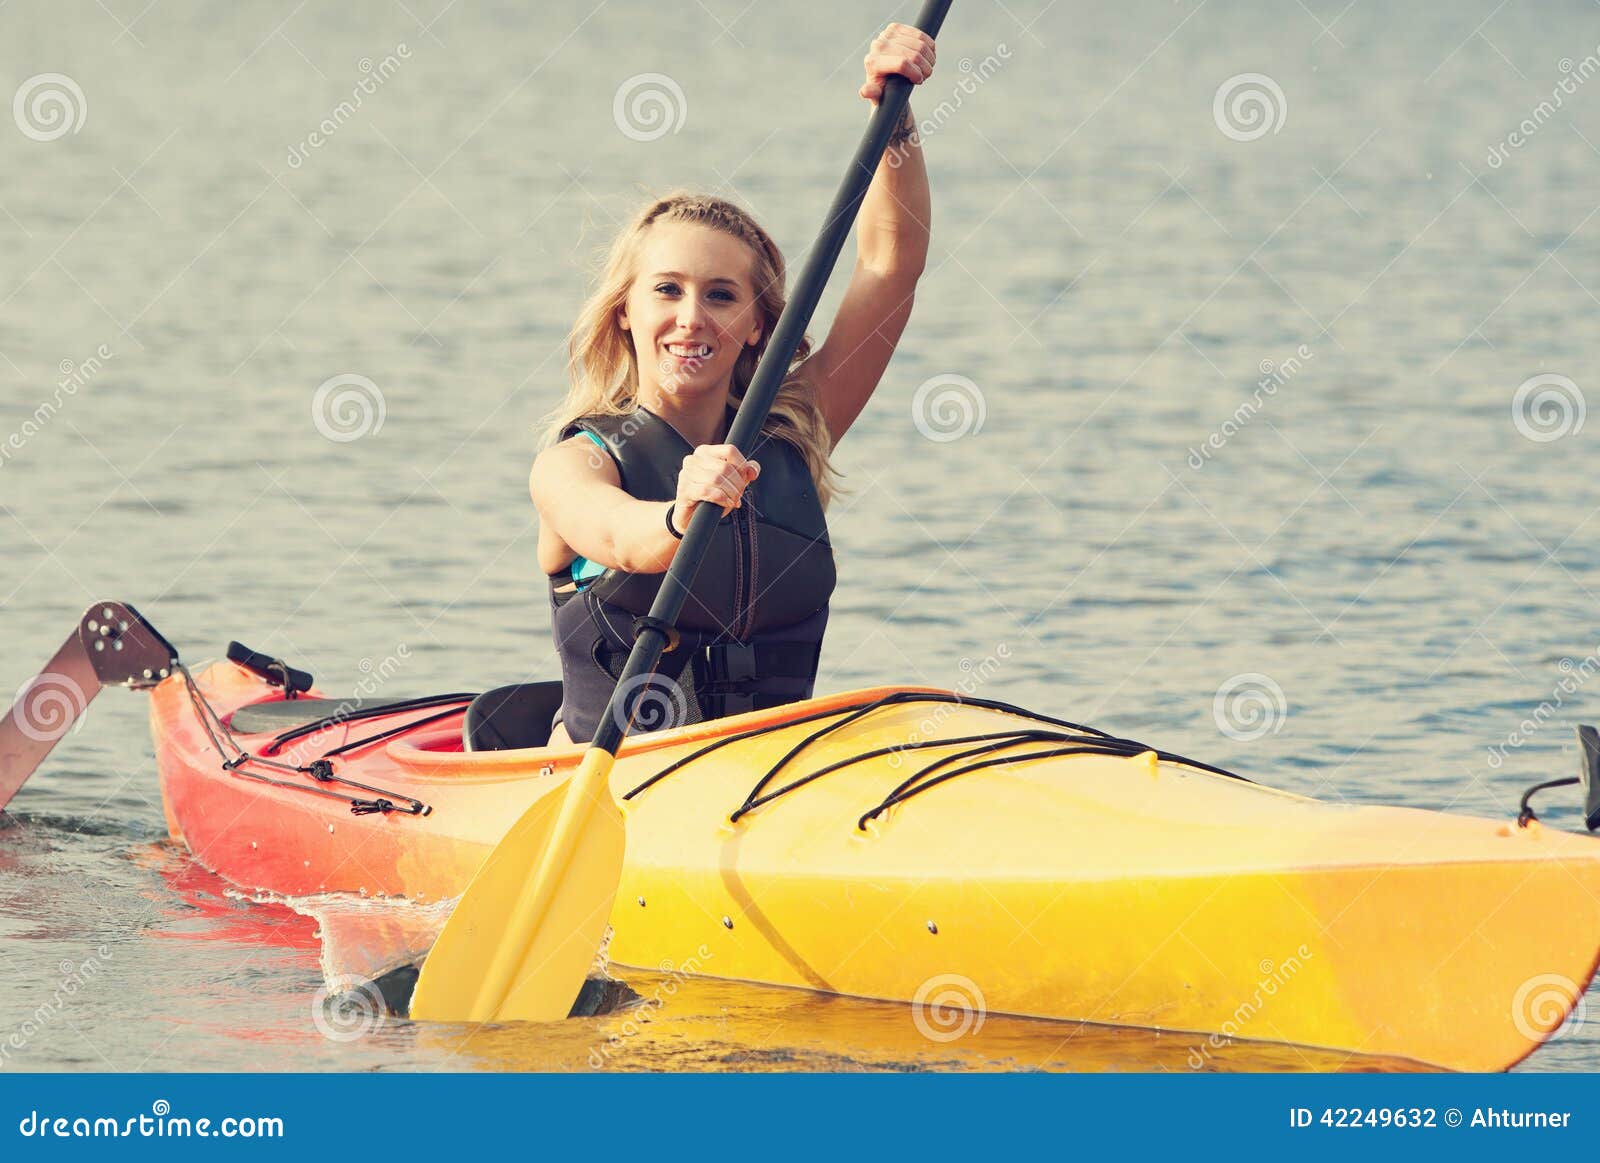 sea kayaking